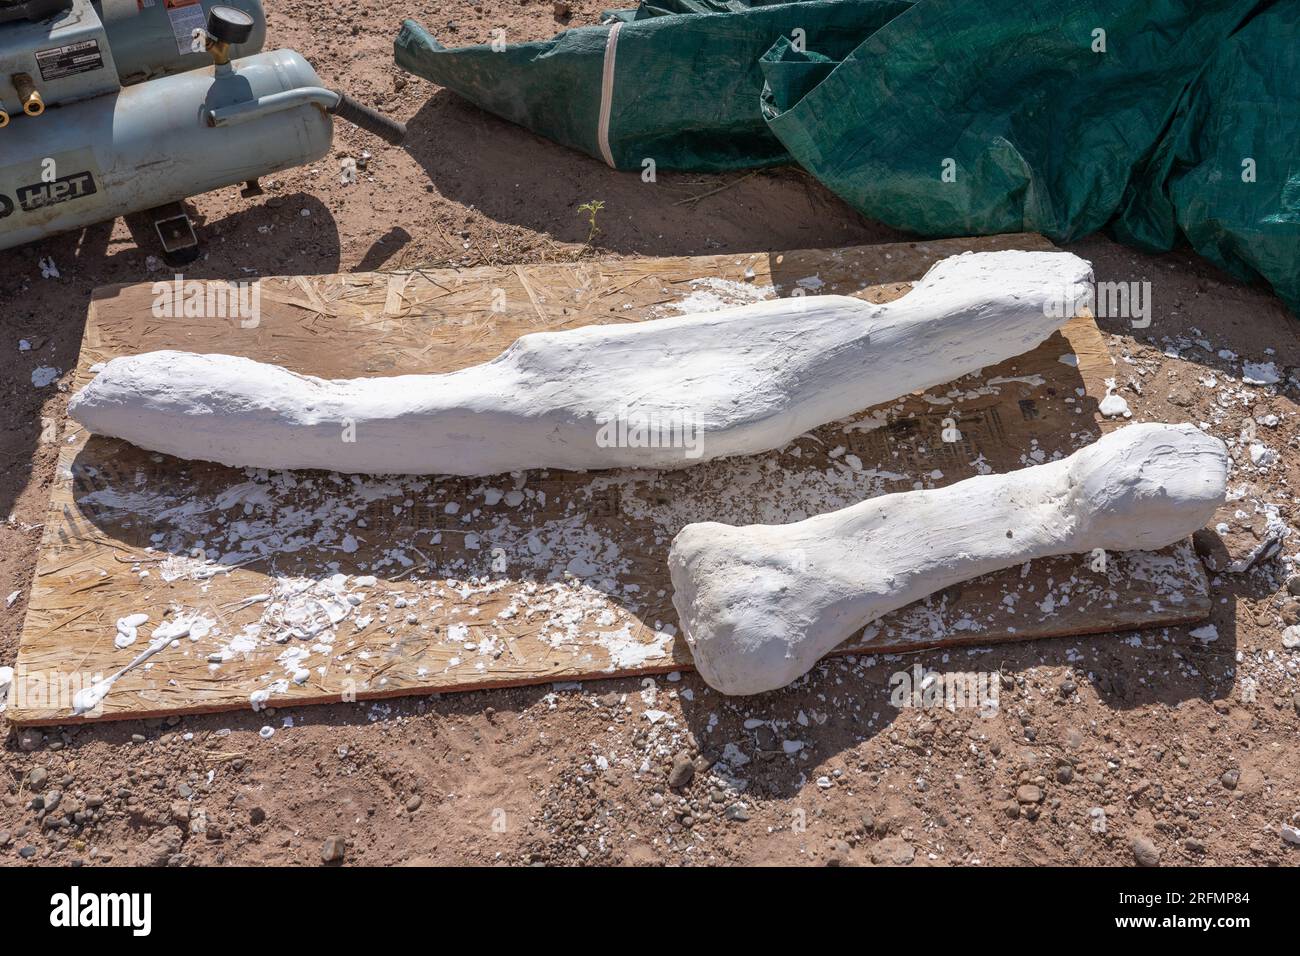 Fossiles d'os de dinosaures enfermés dans du plâtre pour être retirés de la carrière de dinosaures Burpee dans le désert de Caineville près de Hanksville, Utah. Banque D'Images